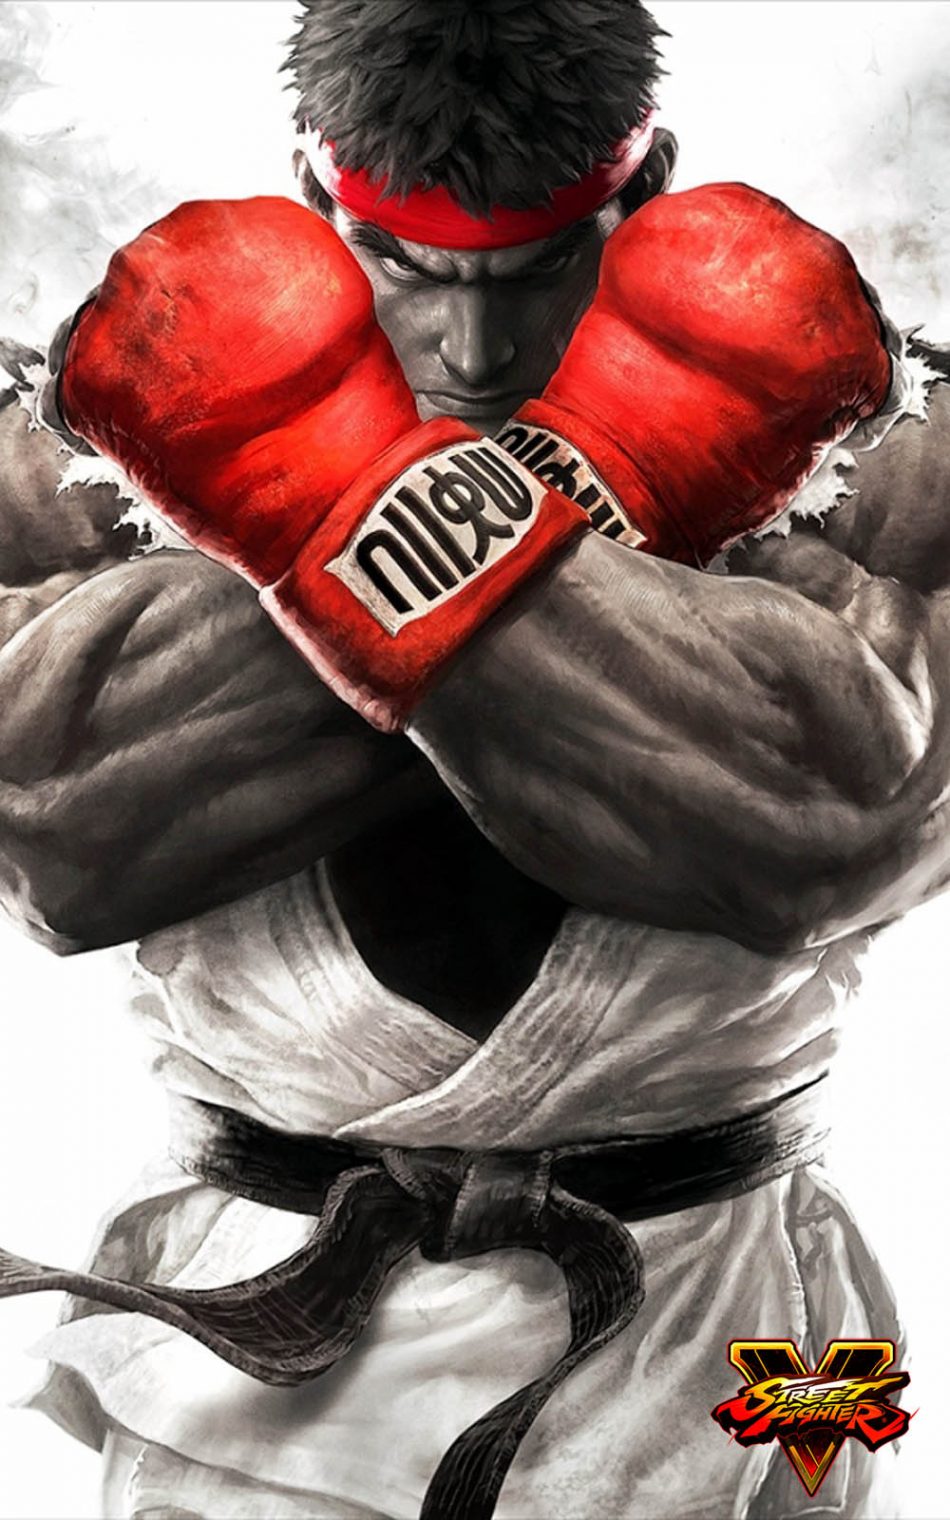 ryu street fighter wallpaper,boxe,guantoni da boxe,boxe professionale,straordinari sport da combattimento,sanshou